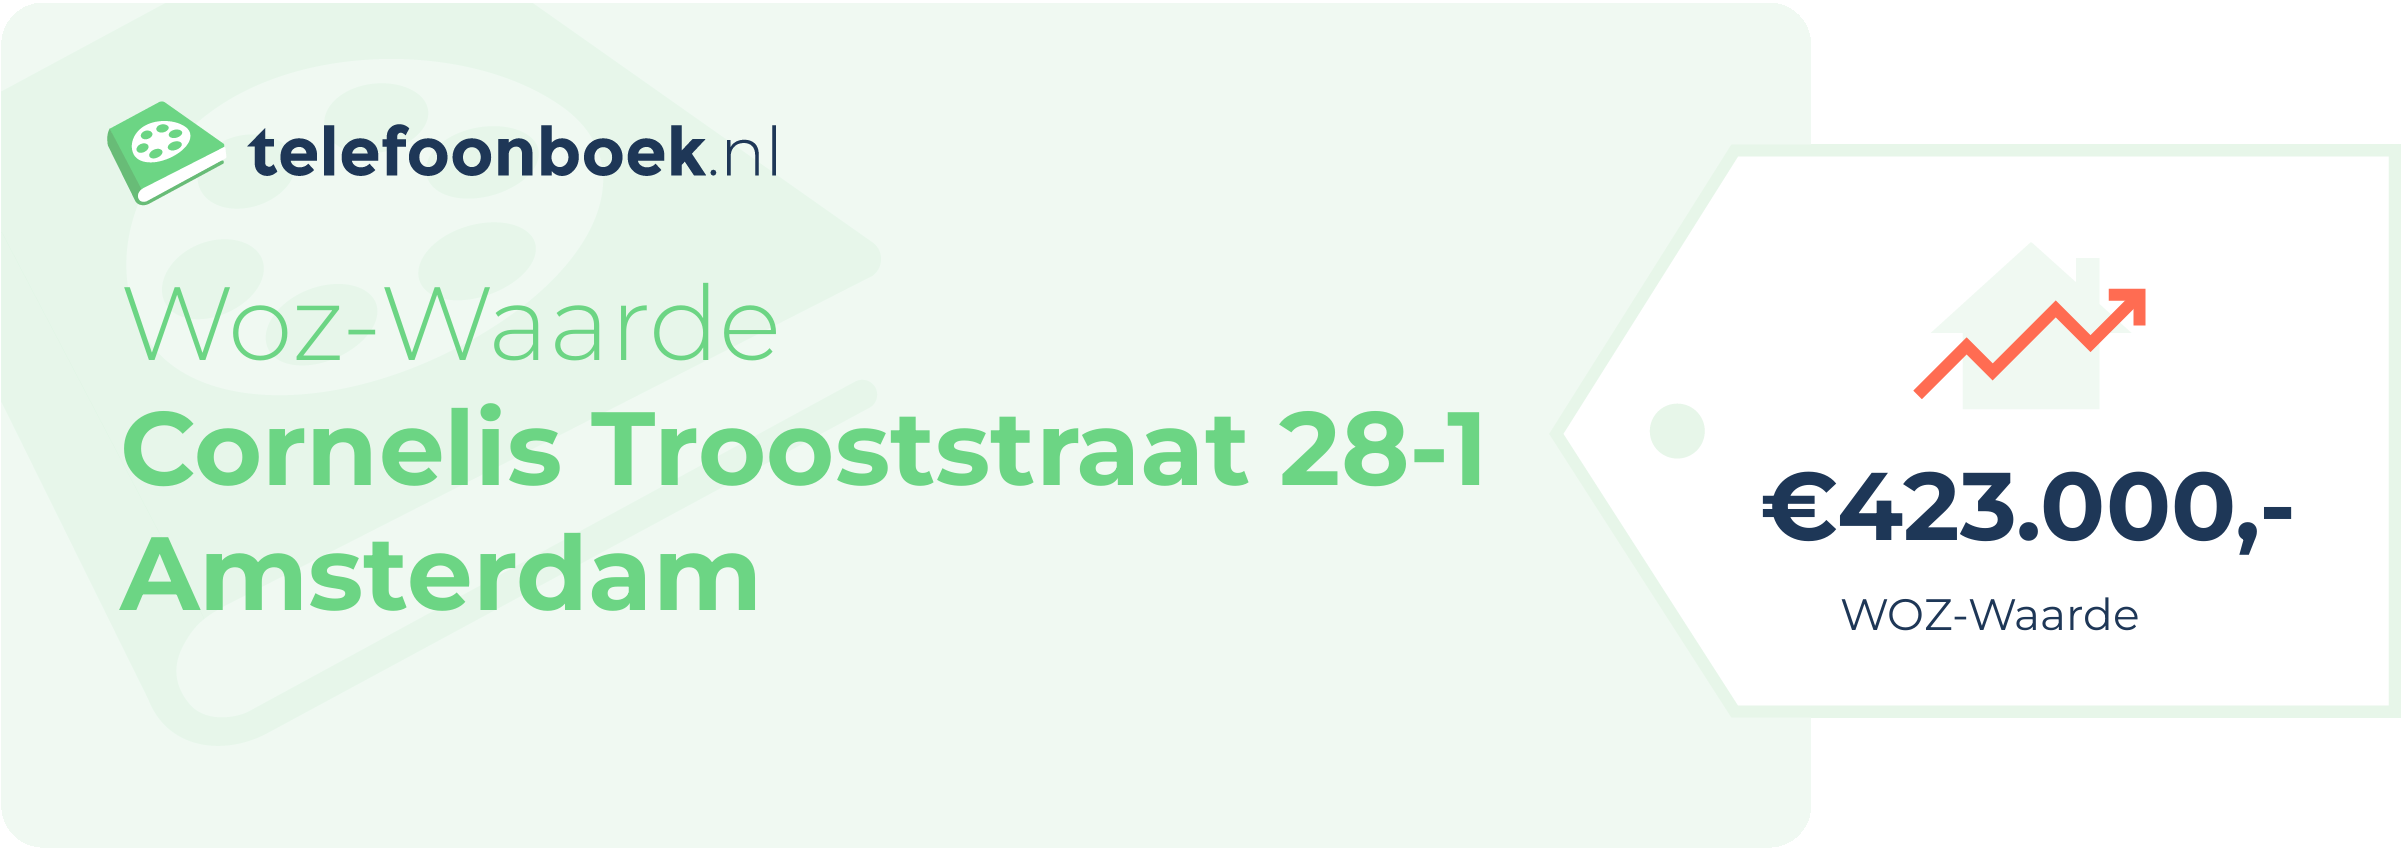 WOZ-waarde Cornelis Trooststraat 28-1 Amsterdam